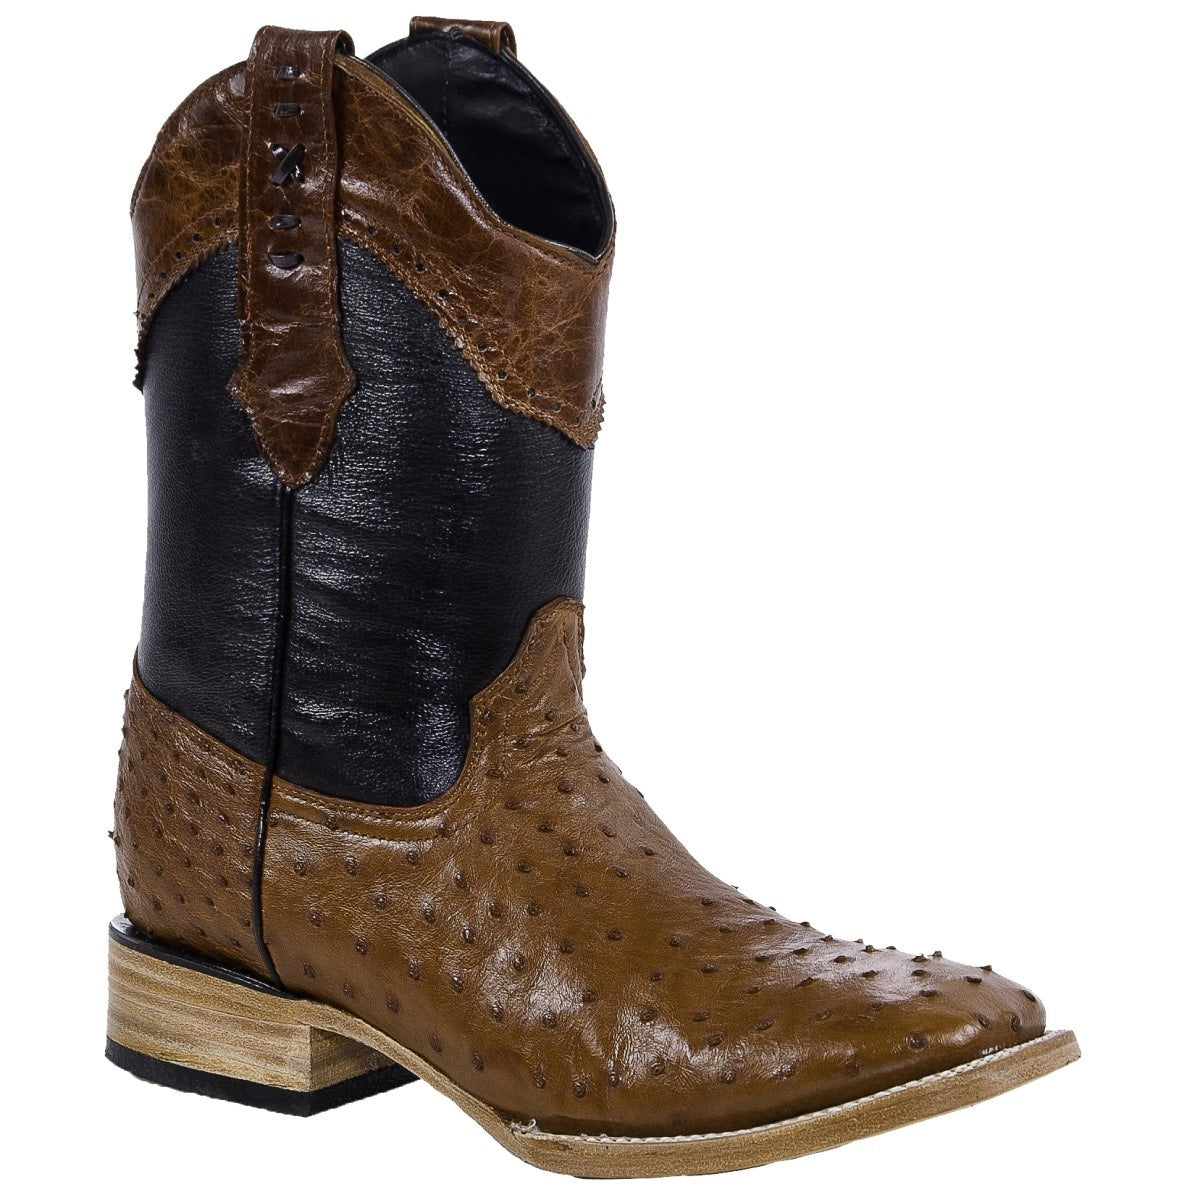 Botas Vaqueras TM-WD0295 - Western Boots